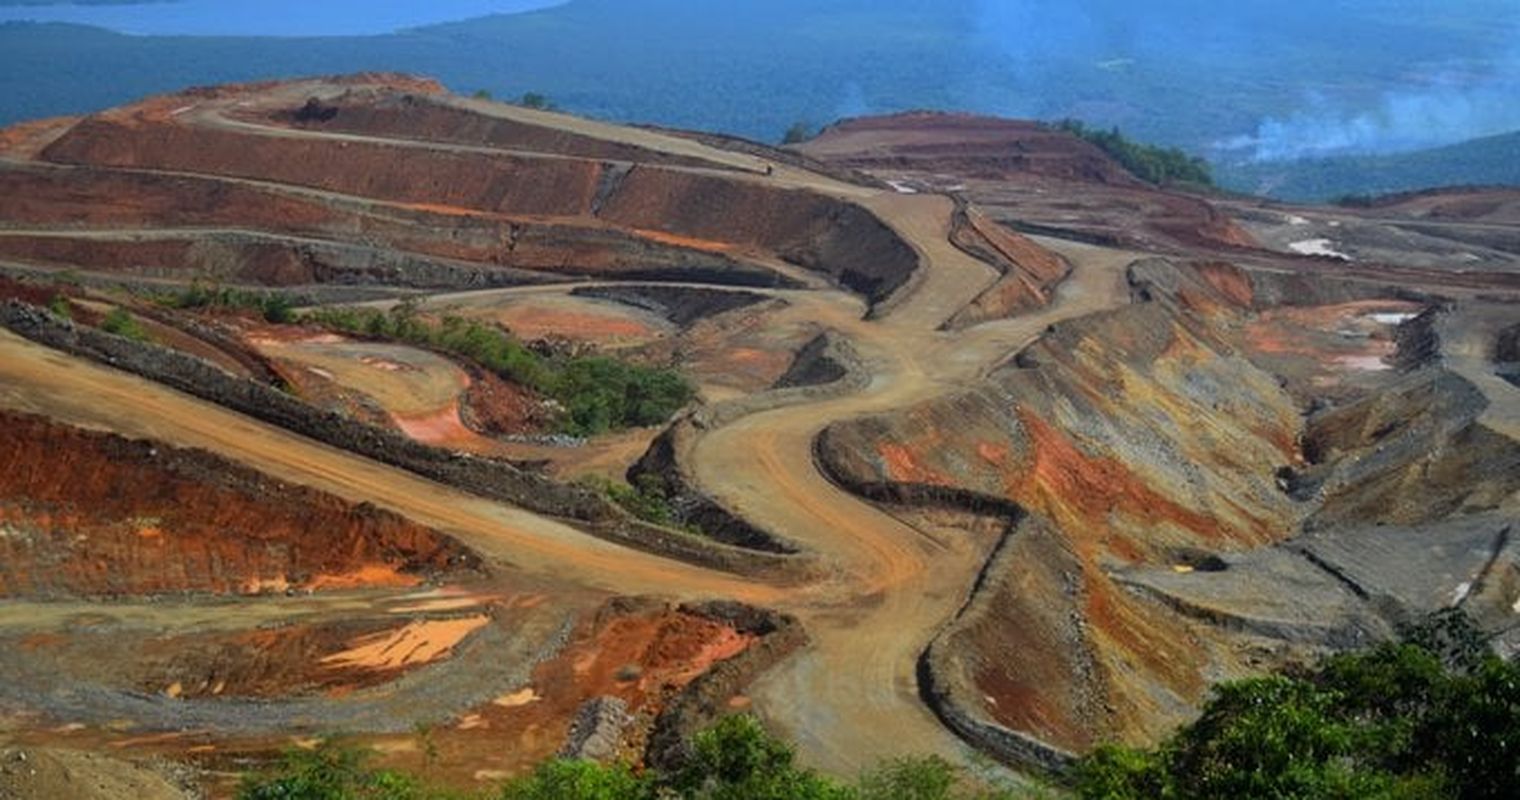 Zuger Bergbauunternehmen soll Umweltsünden vertuscht haben